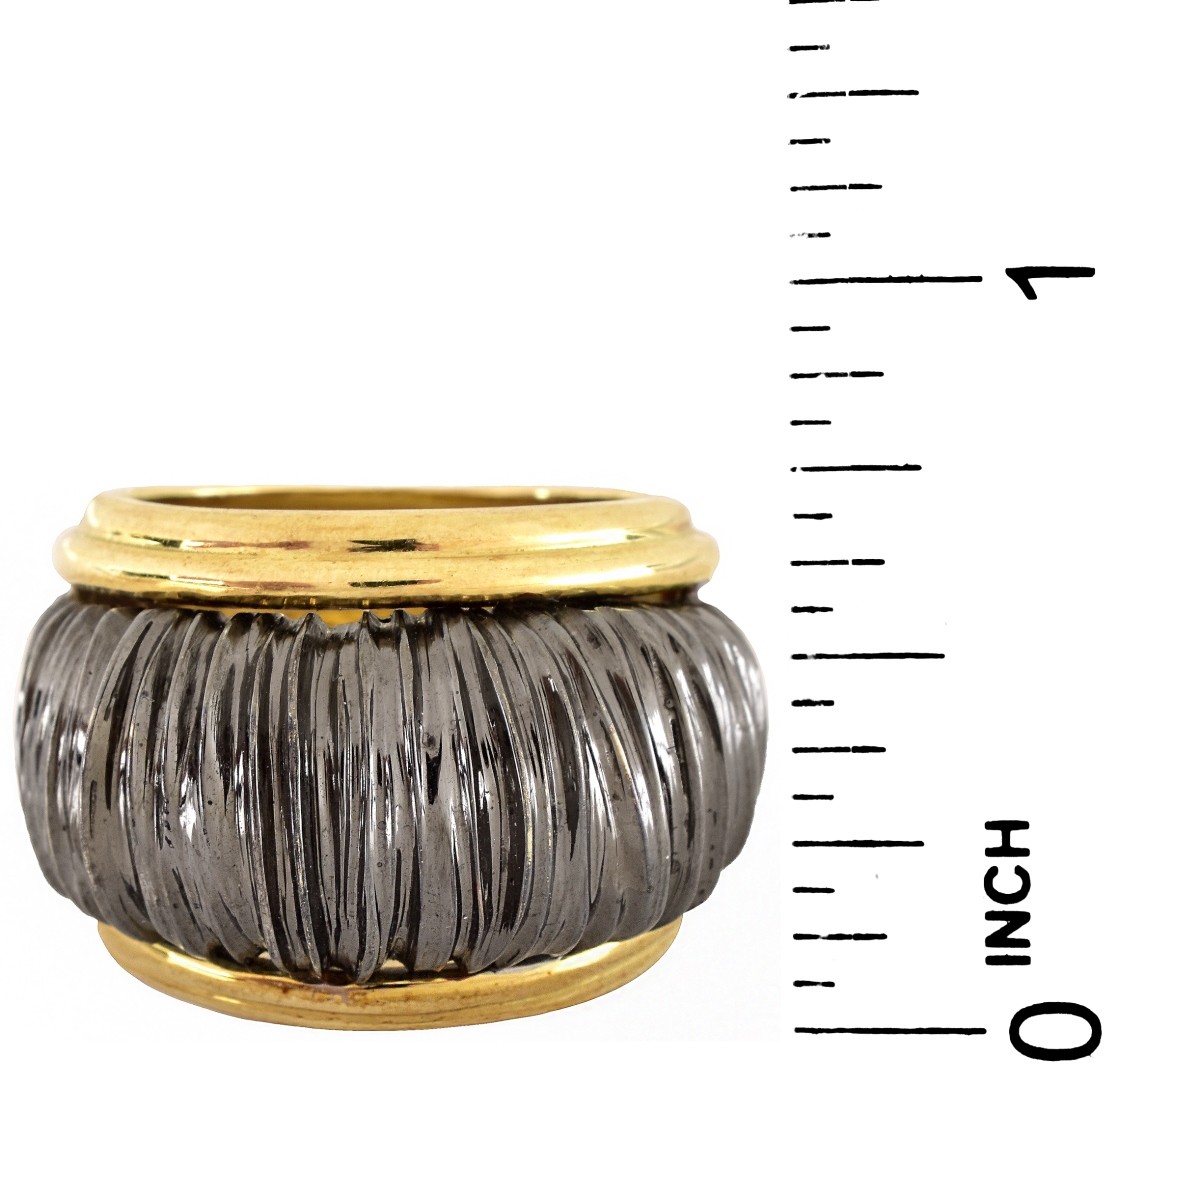 Italian 14K Gold Ring